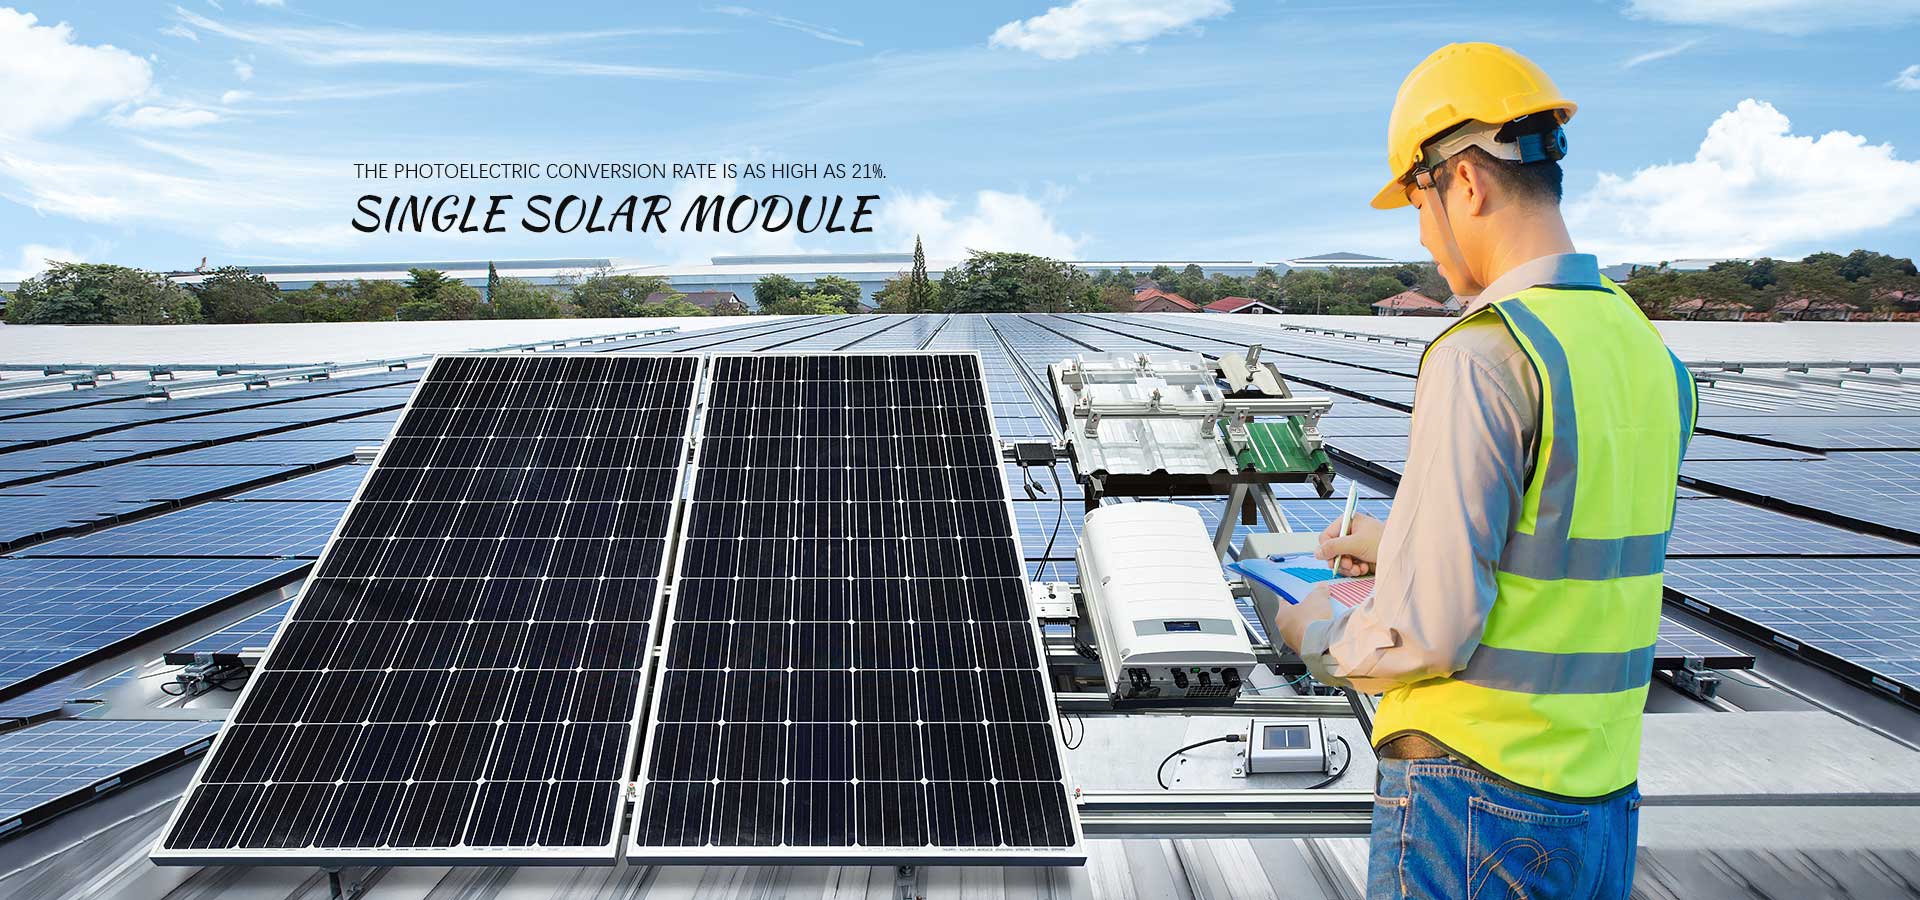 Производители и фабрики солнечных модулей с одним стеклом